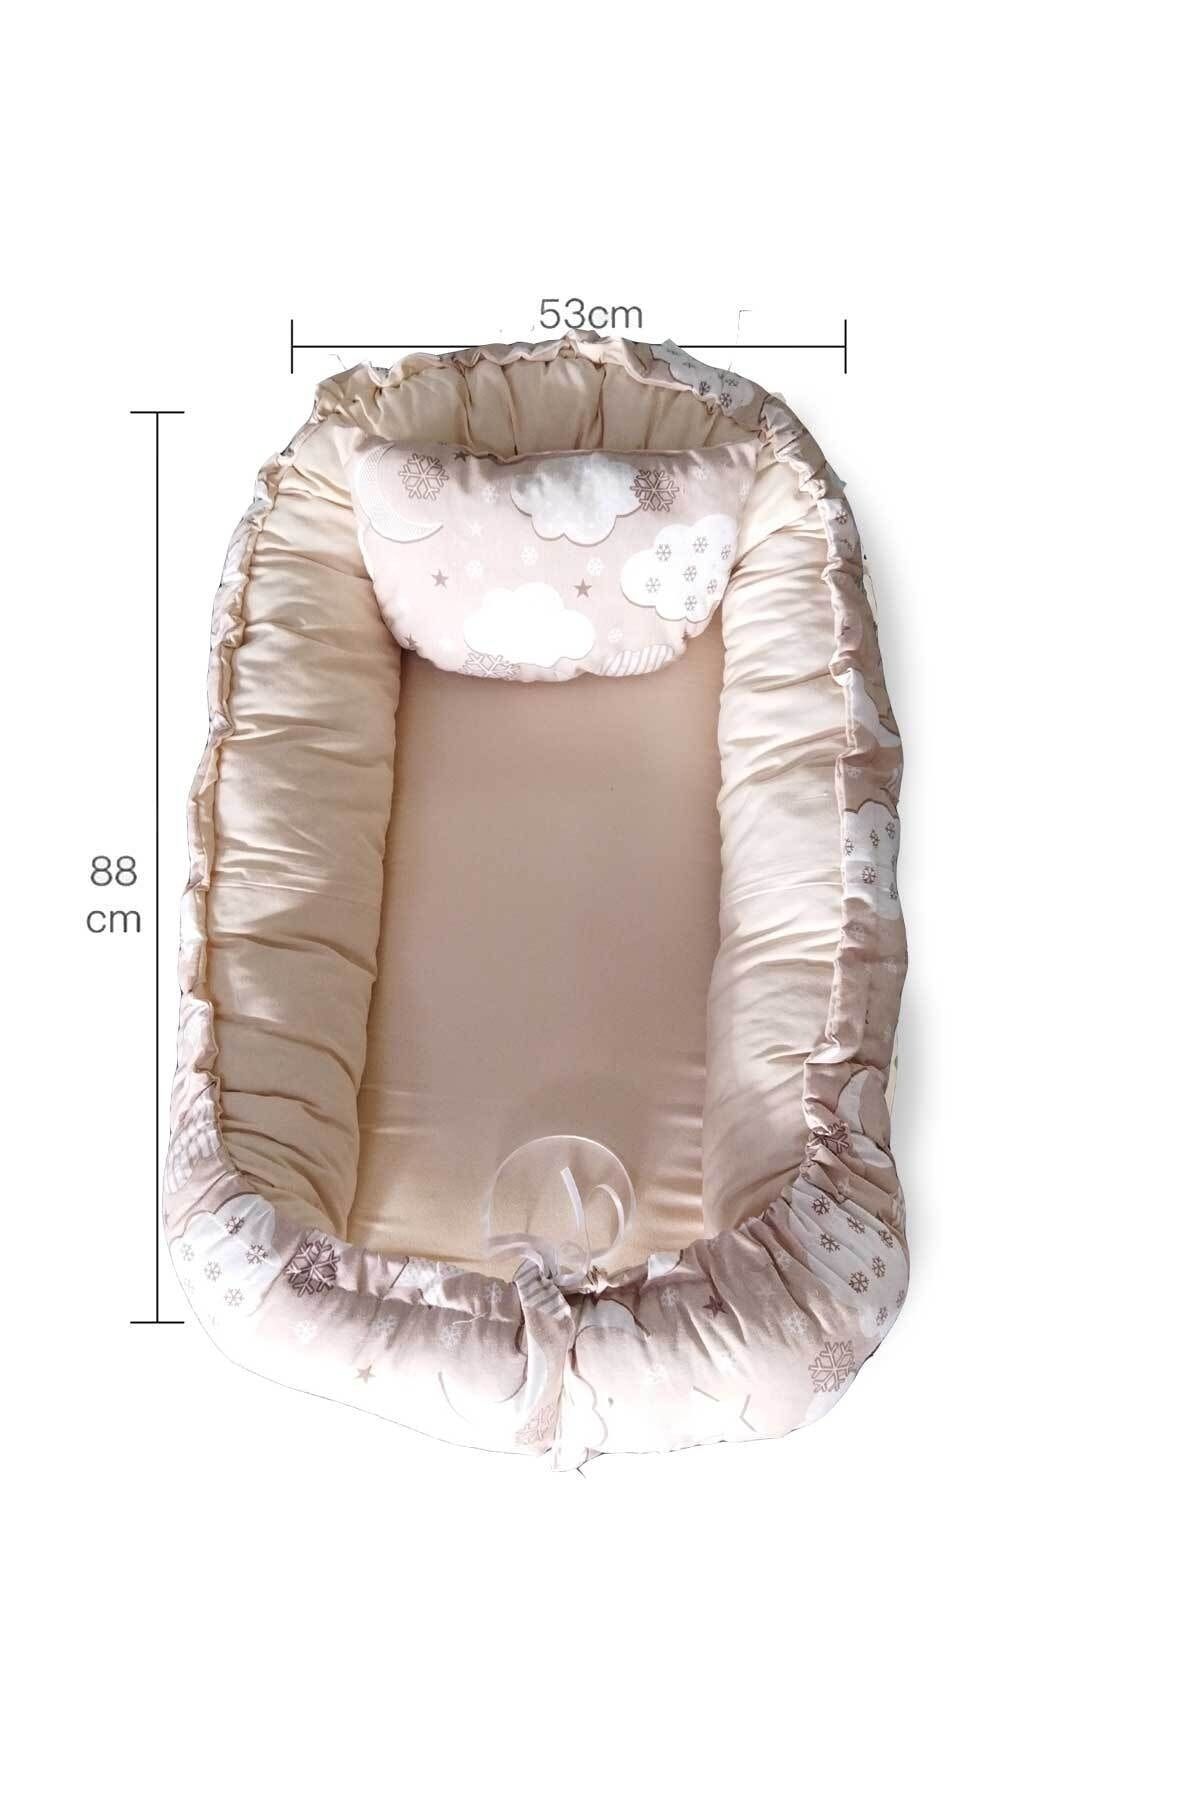 RevuBaby Baby Nest Lüx Tasarım Ortopedikjaju-babynest Bebek Yatağı Anne Yanı Bebek Yatağı